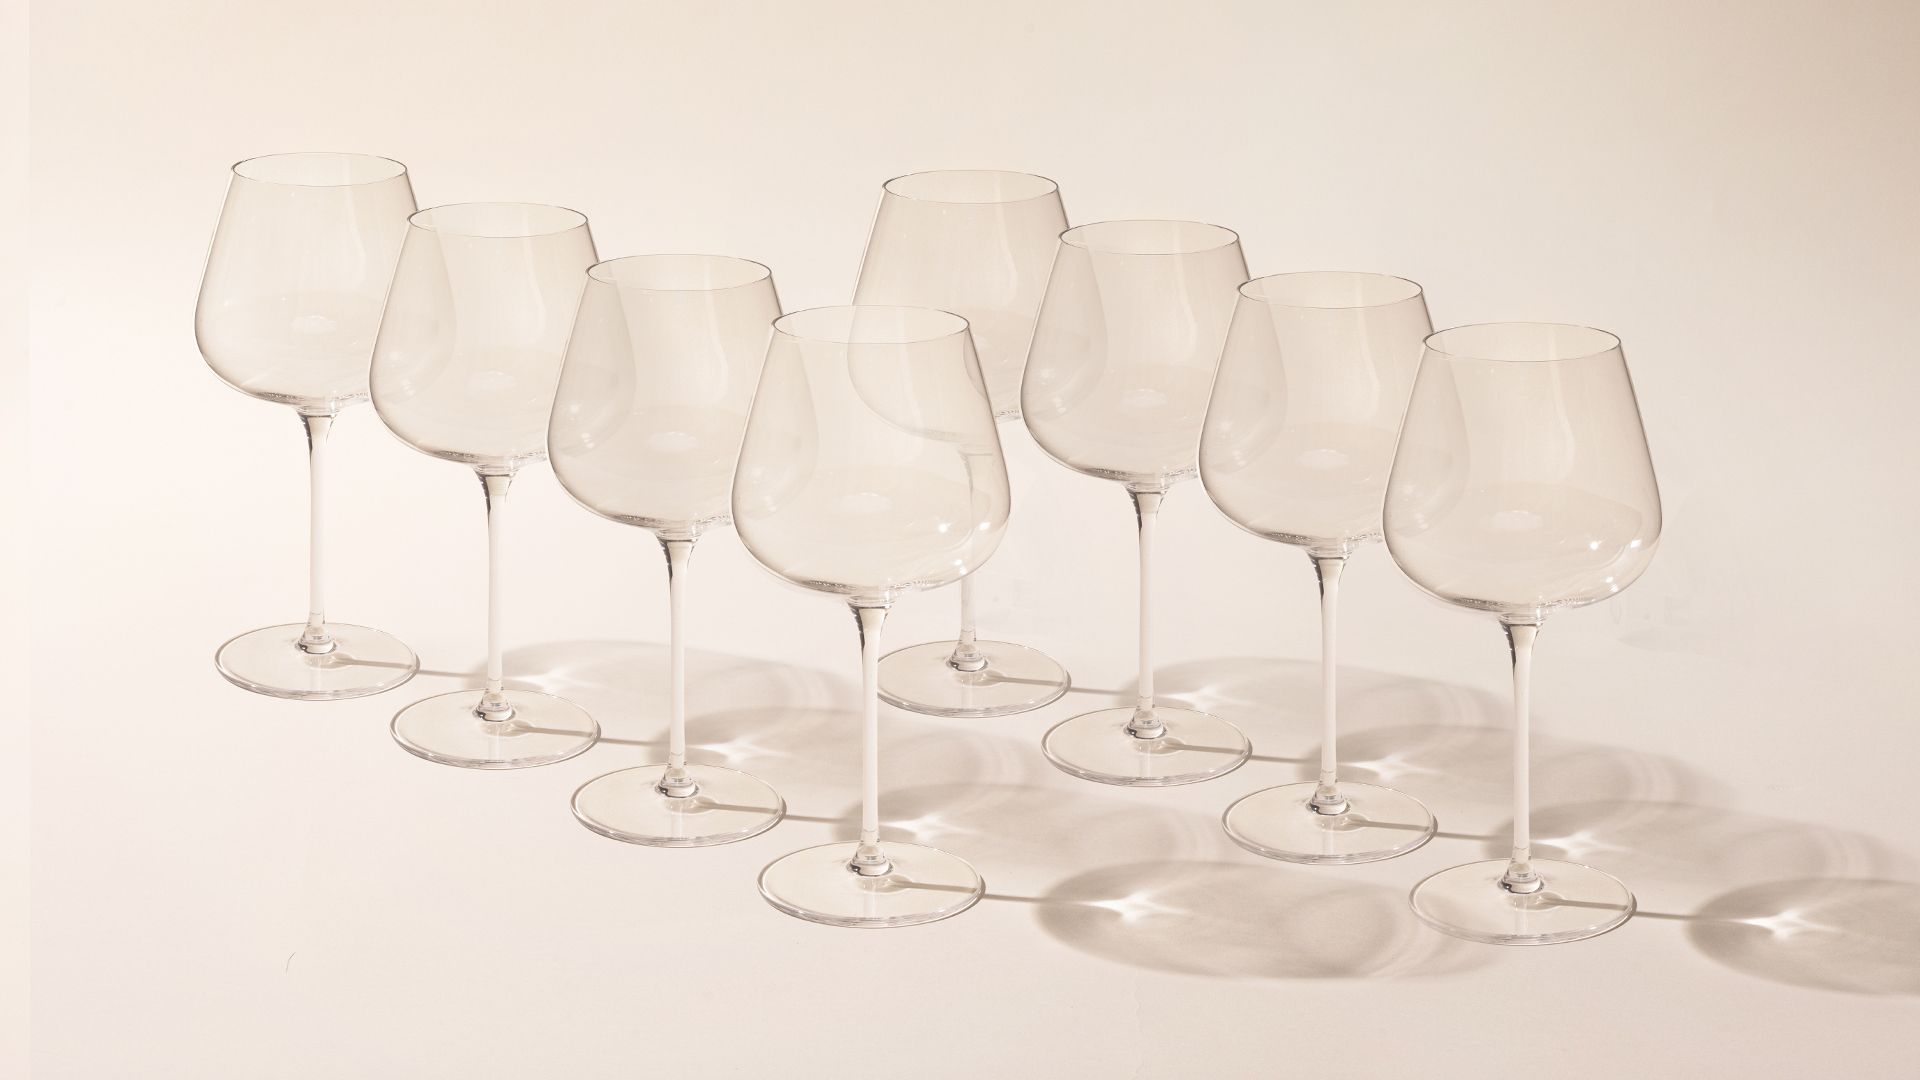 LeadingWare Diamond Cut Plastic Wine Glasses Set of 4 (12oz), Acrylic Wine  Glass Set, Red Wine Glasses, White Wine Glasses - Bed Bath & Beyond -  38198626